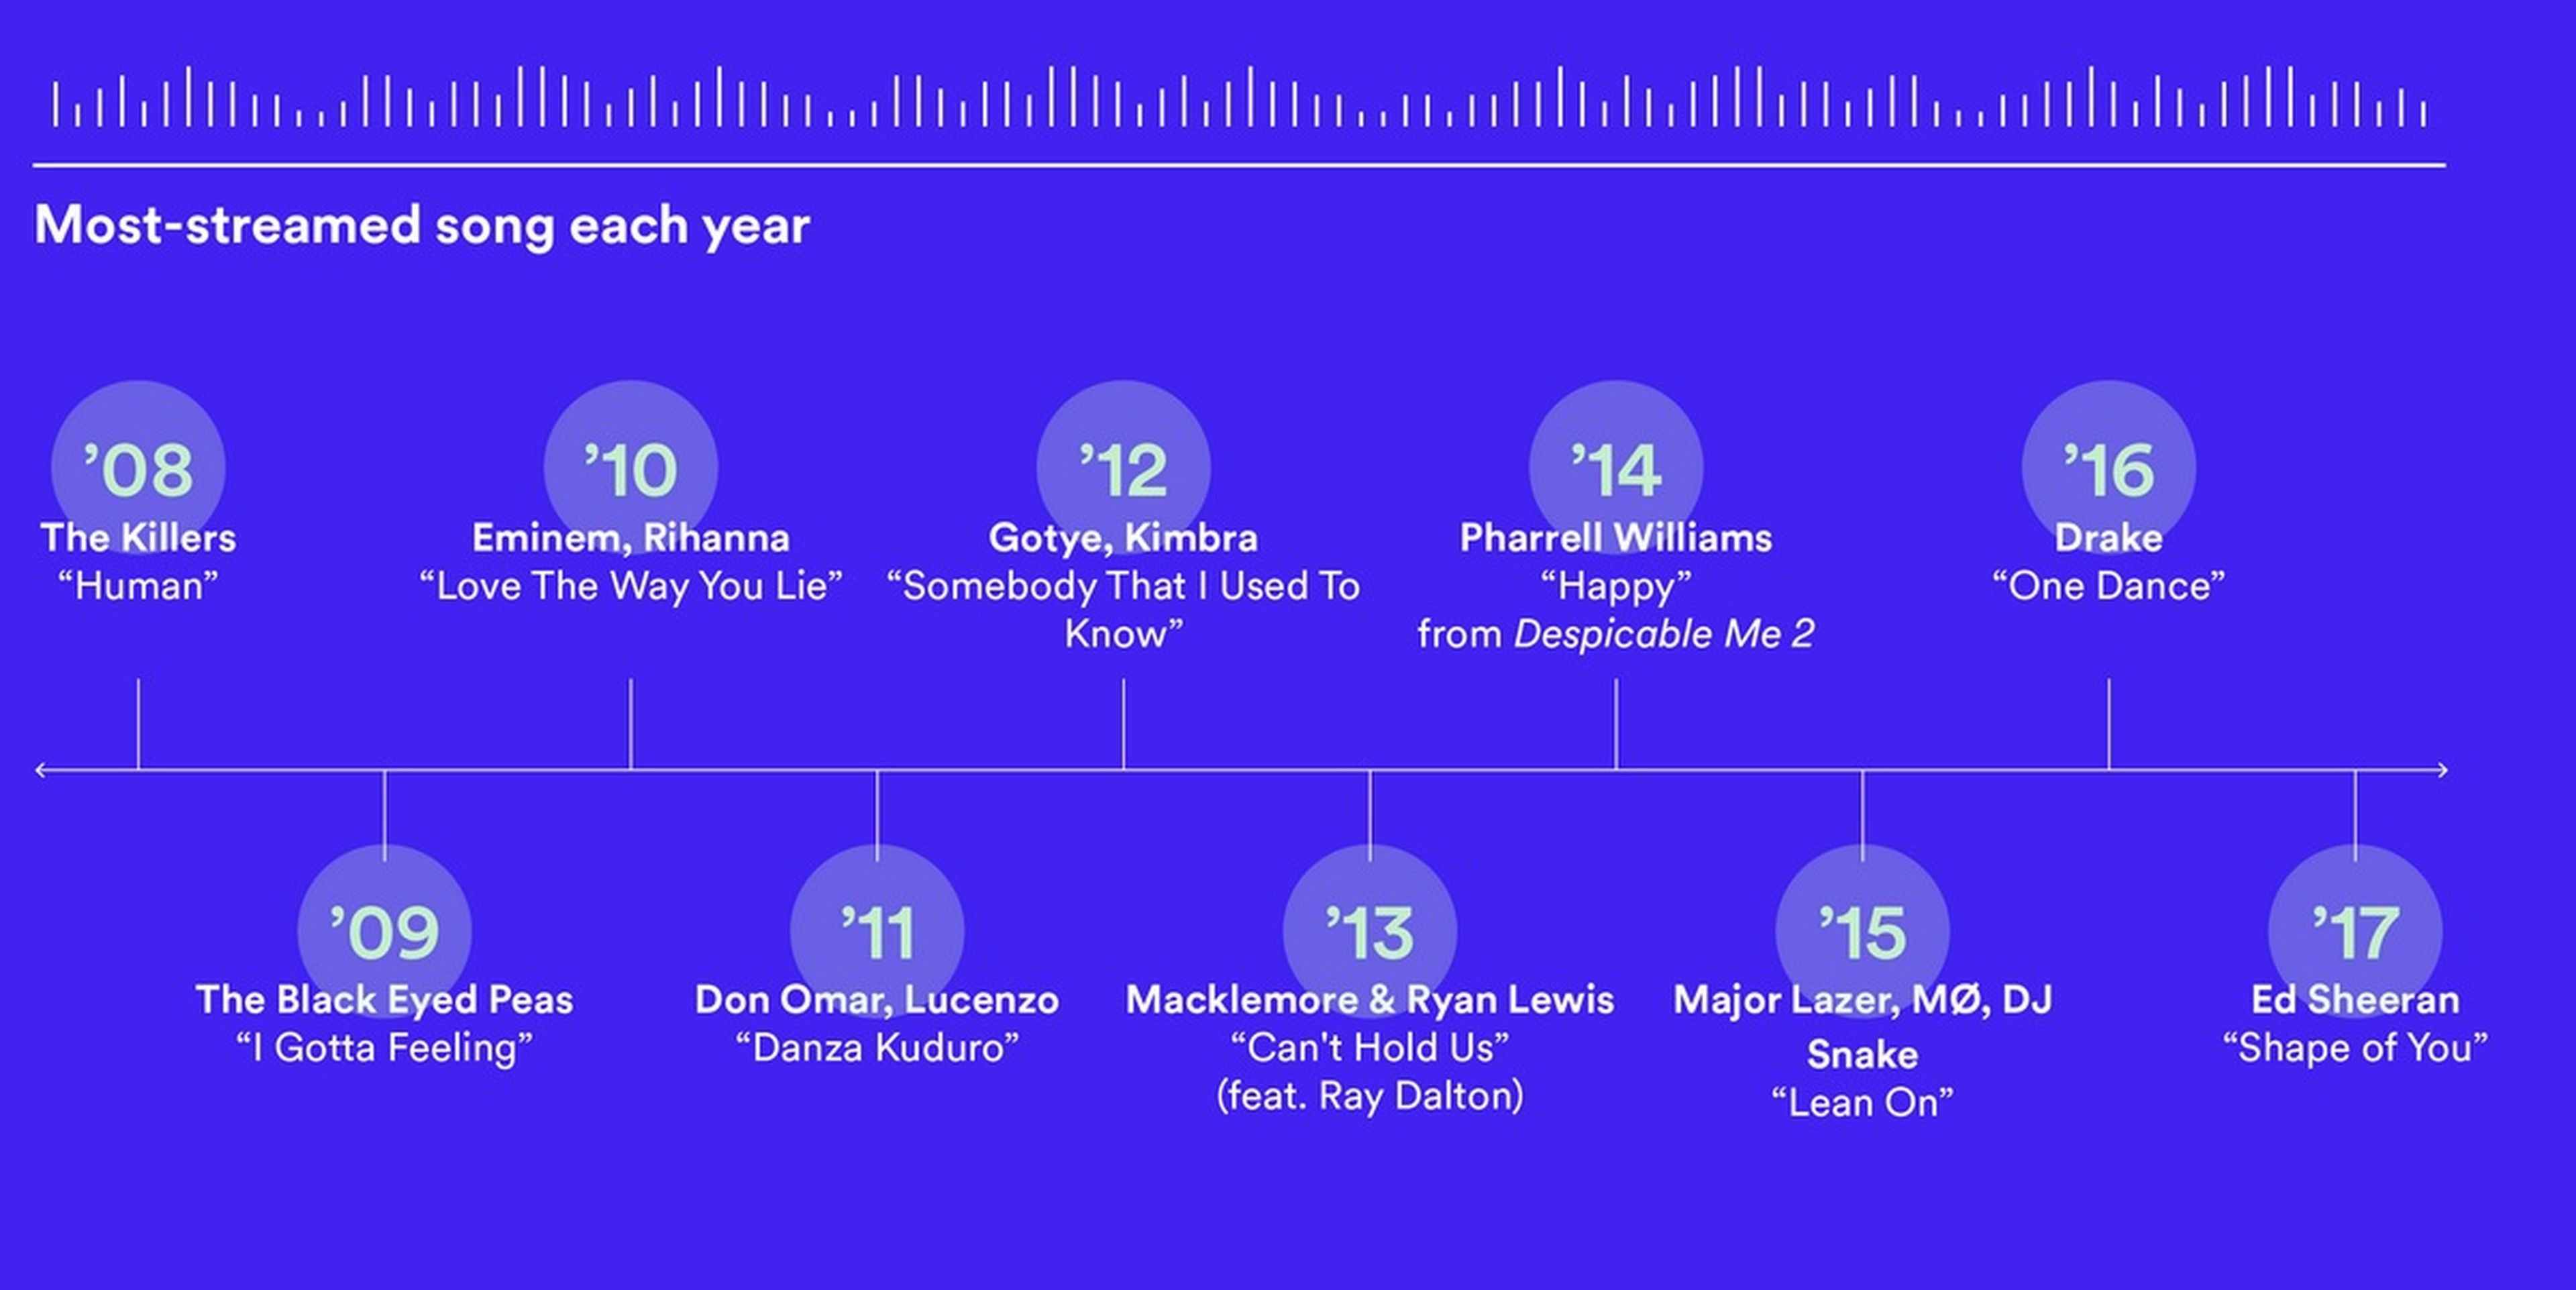 Comunista influenza circulación Estas son las 10 canciones más escuchadas en la historia de Spotify |  Computer Hoy